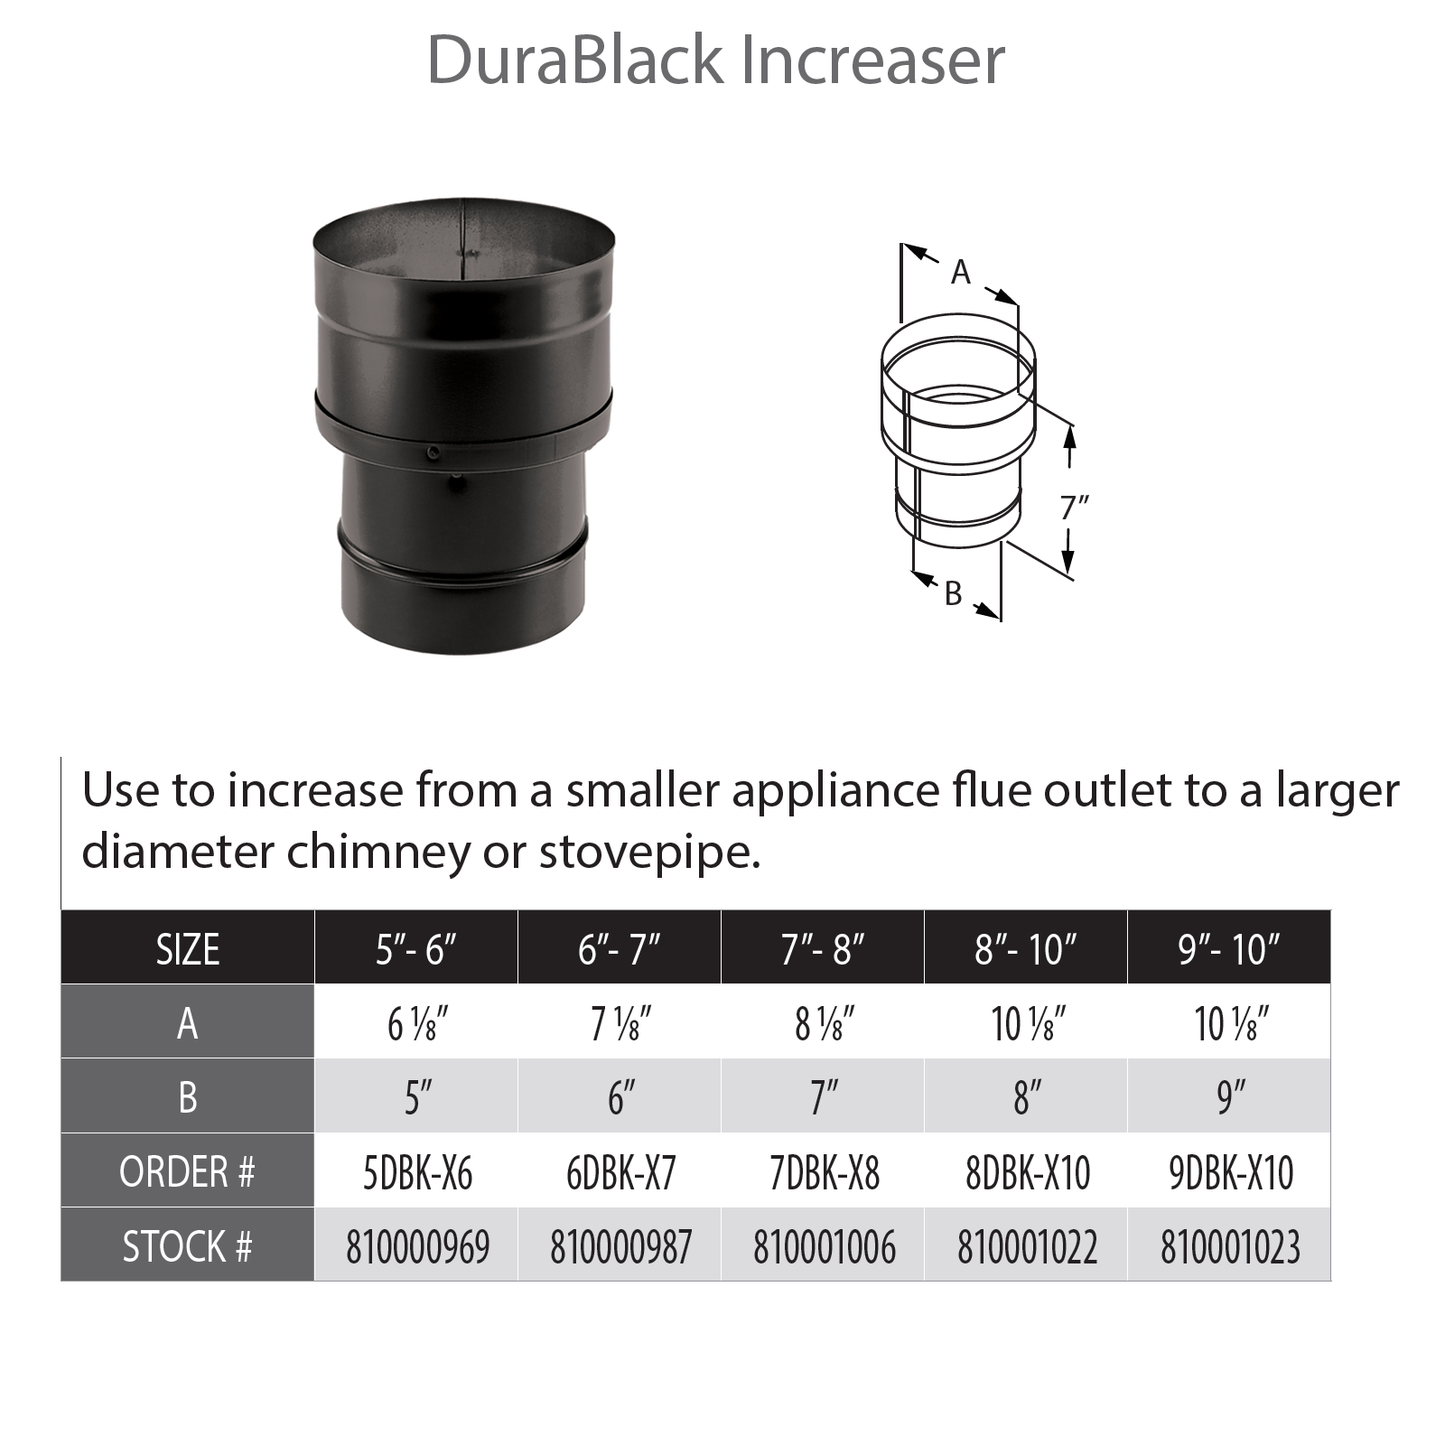 DuraVent DuraBlack 10" Diameter Black Increaser 8" - 10" | 8DBK-X10